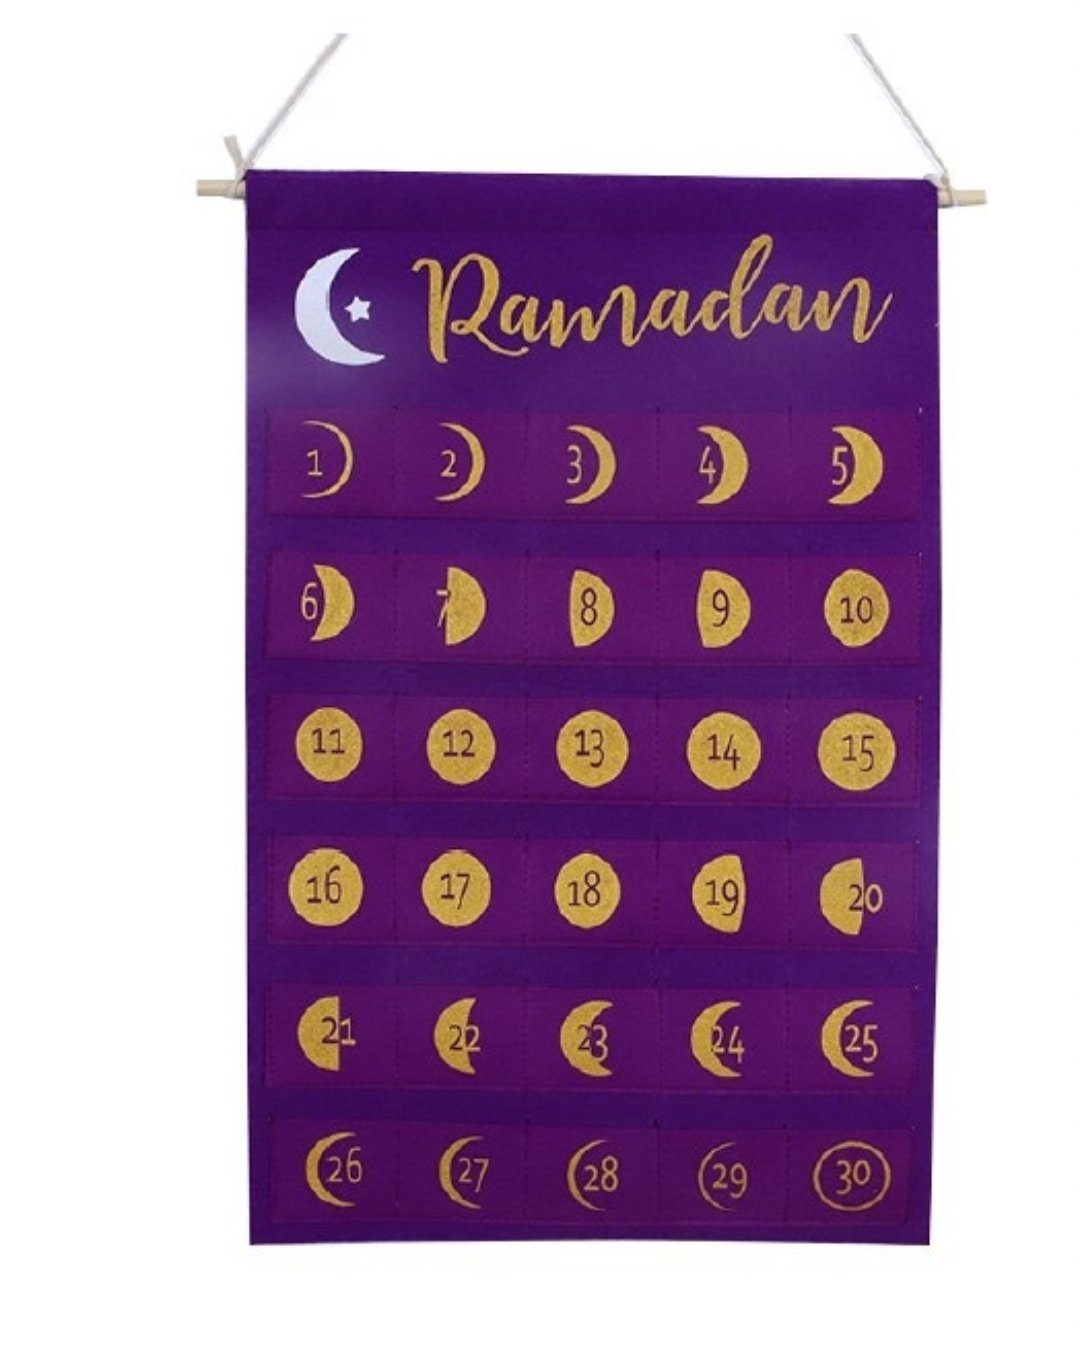 Ramadan Kalender - Förundran för Barn!